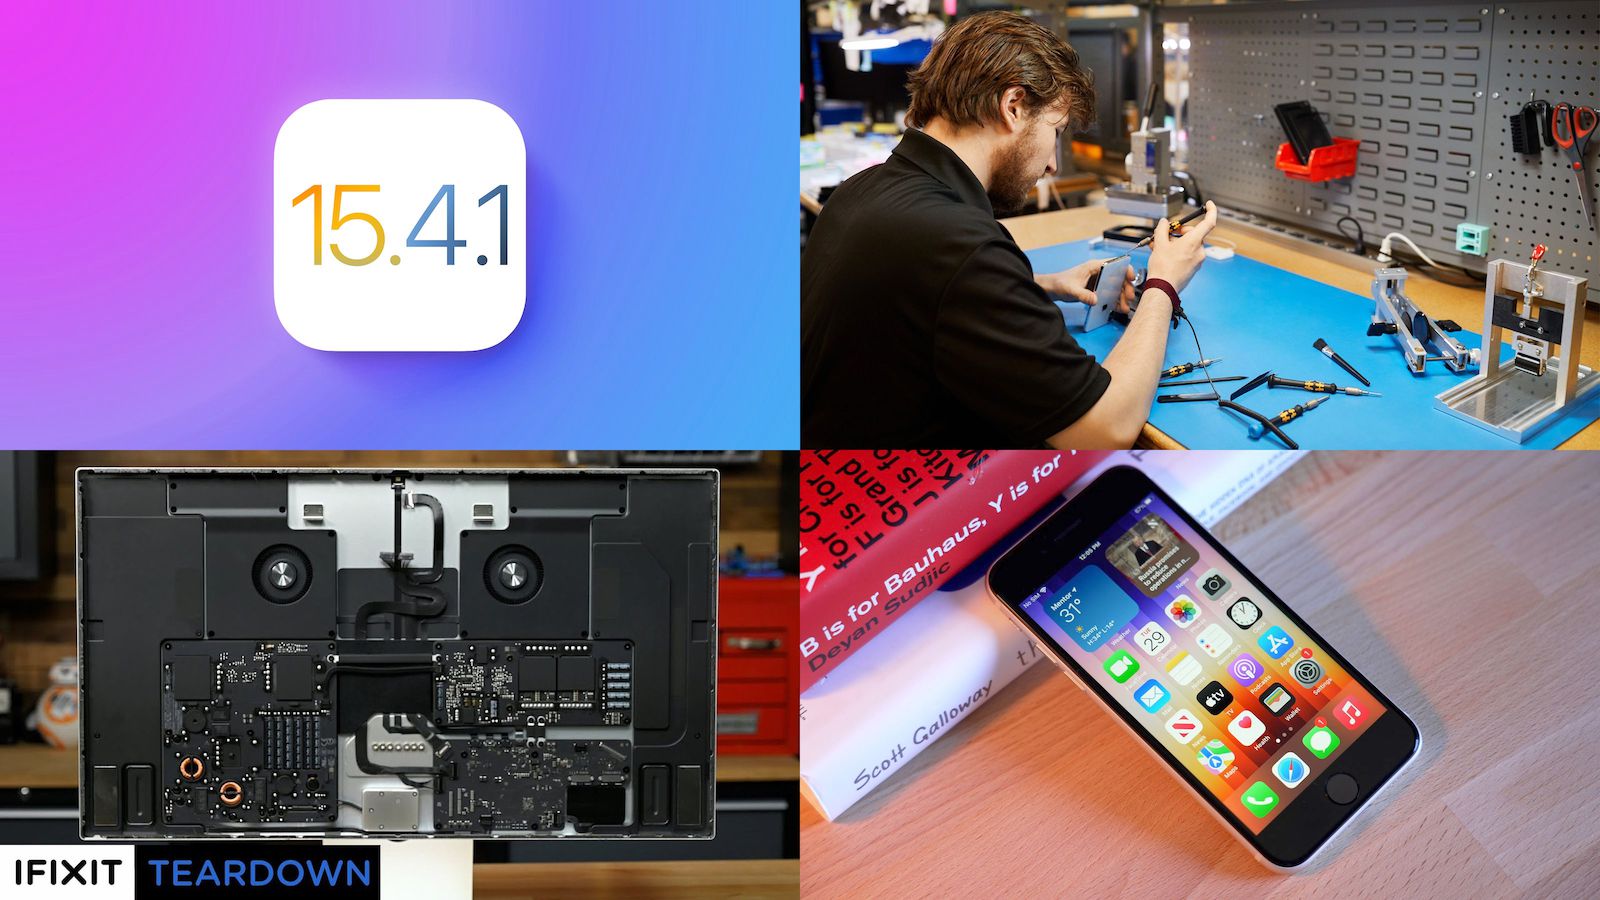 Top Stories: iOS 15.4.1 Released, Studio Display Teardown, and More